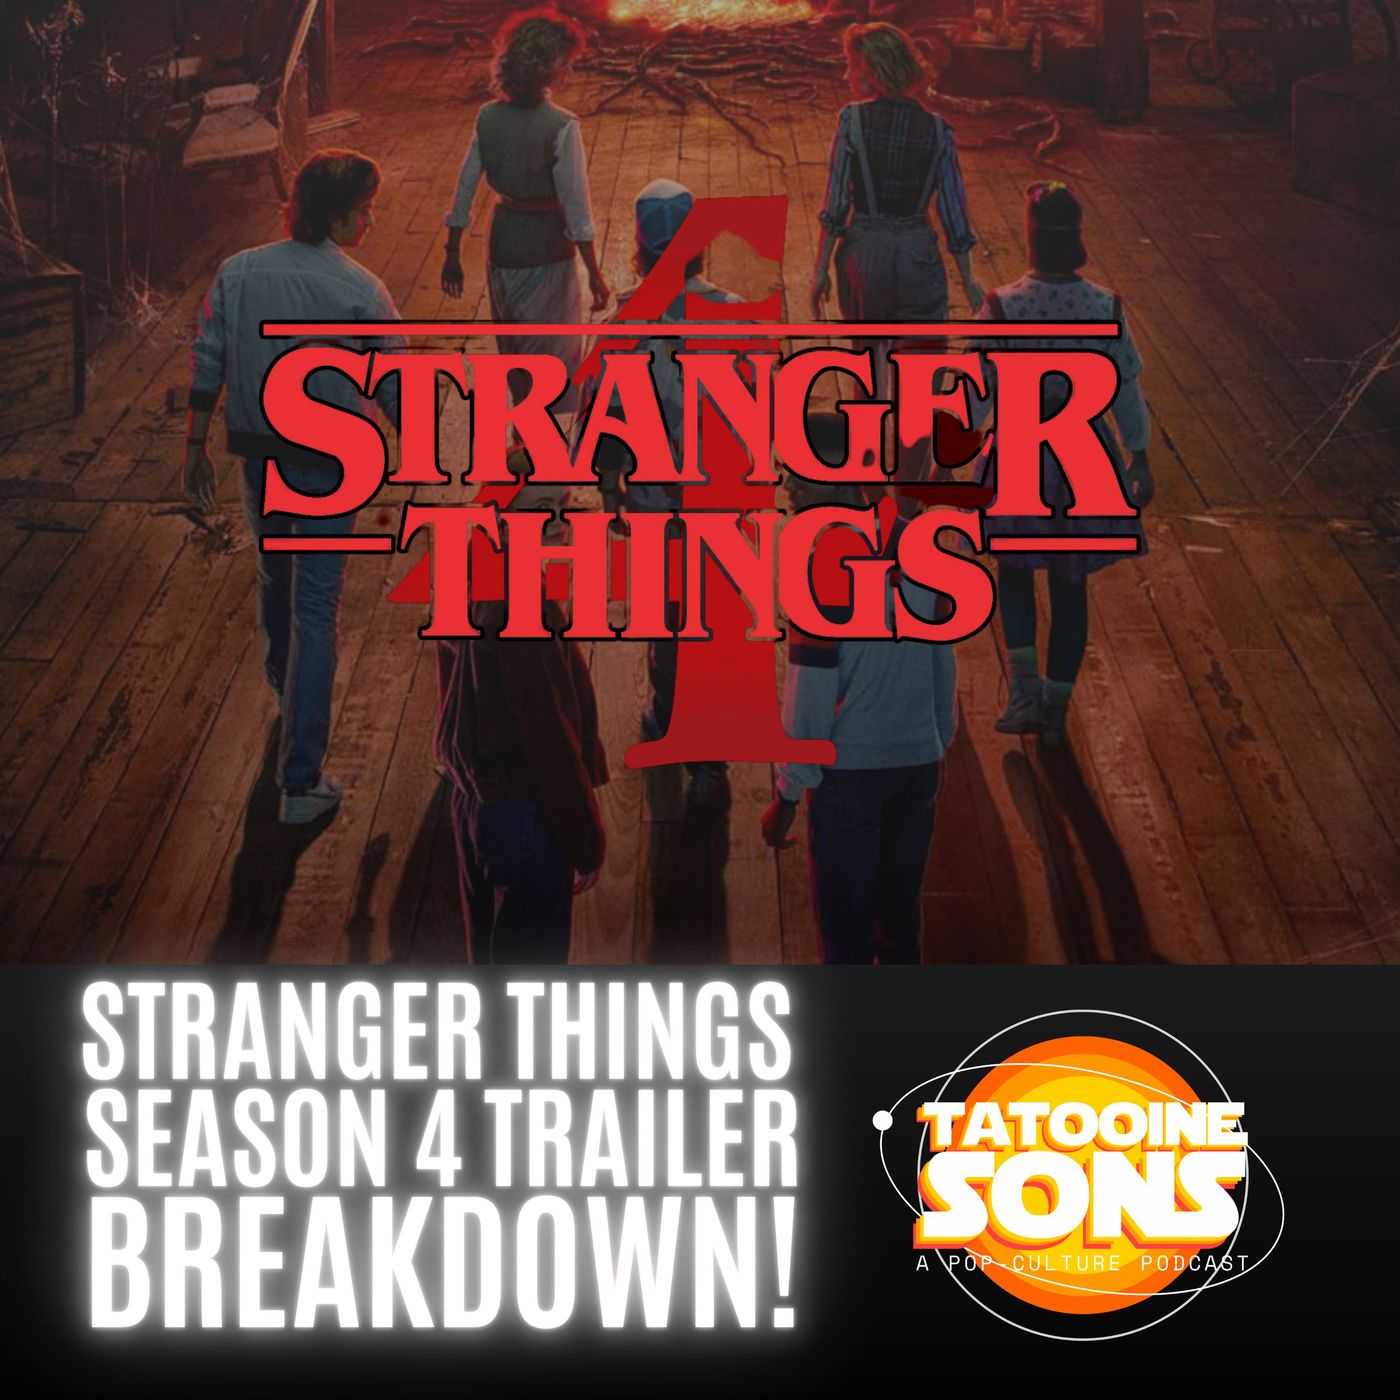 Stranger Things Season 4 Trailer Breakdown